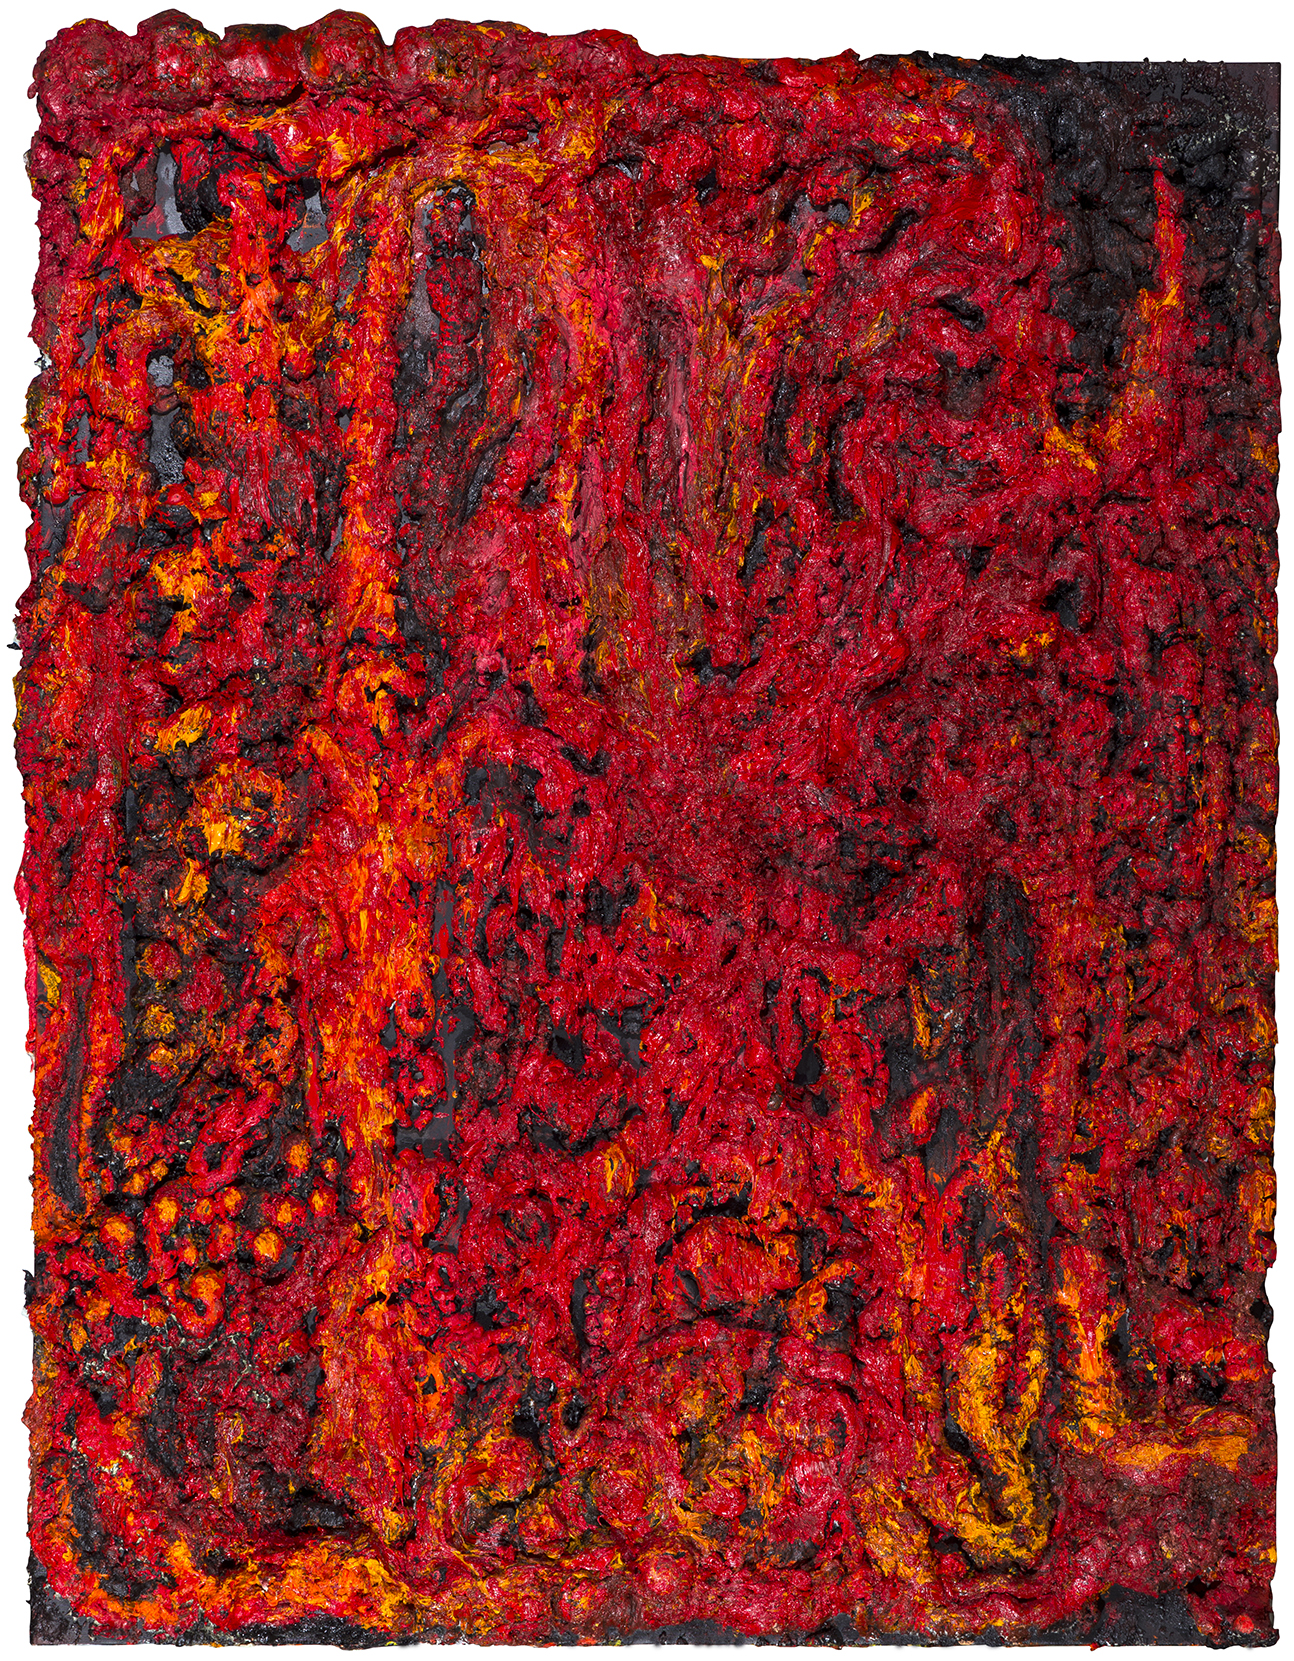  Magma Mutant, 2017 Oil, gesso, acrylic, polyurethane foam on canvas 270 x 210 cm 